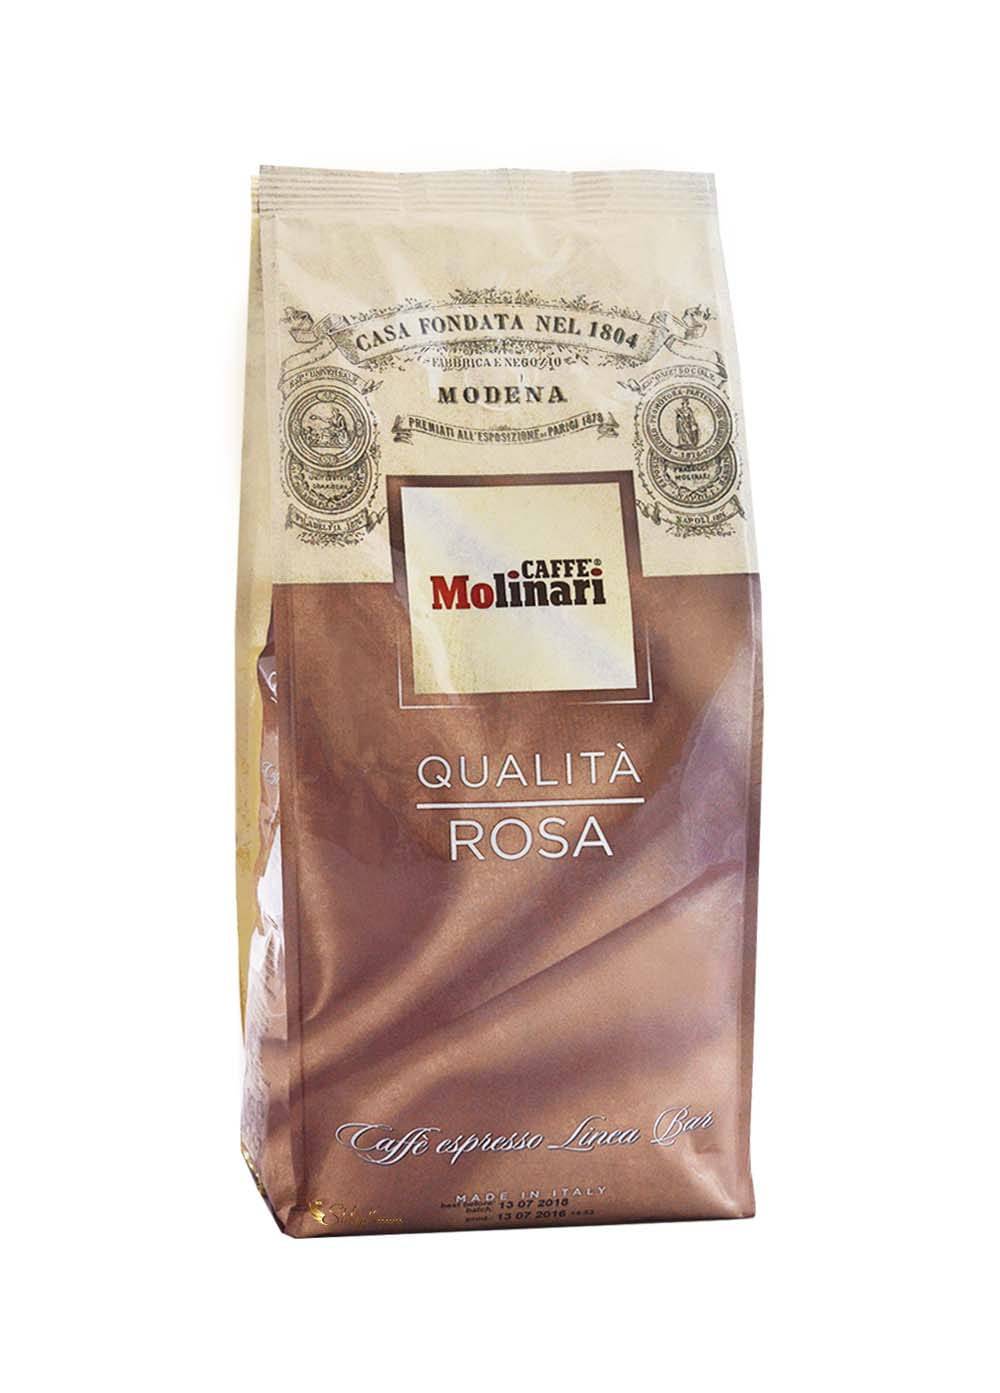 Кофе "молинари" (molinari): описание аромата, производитель, отзывы - новости, статьи и обзоры